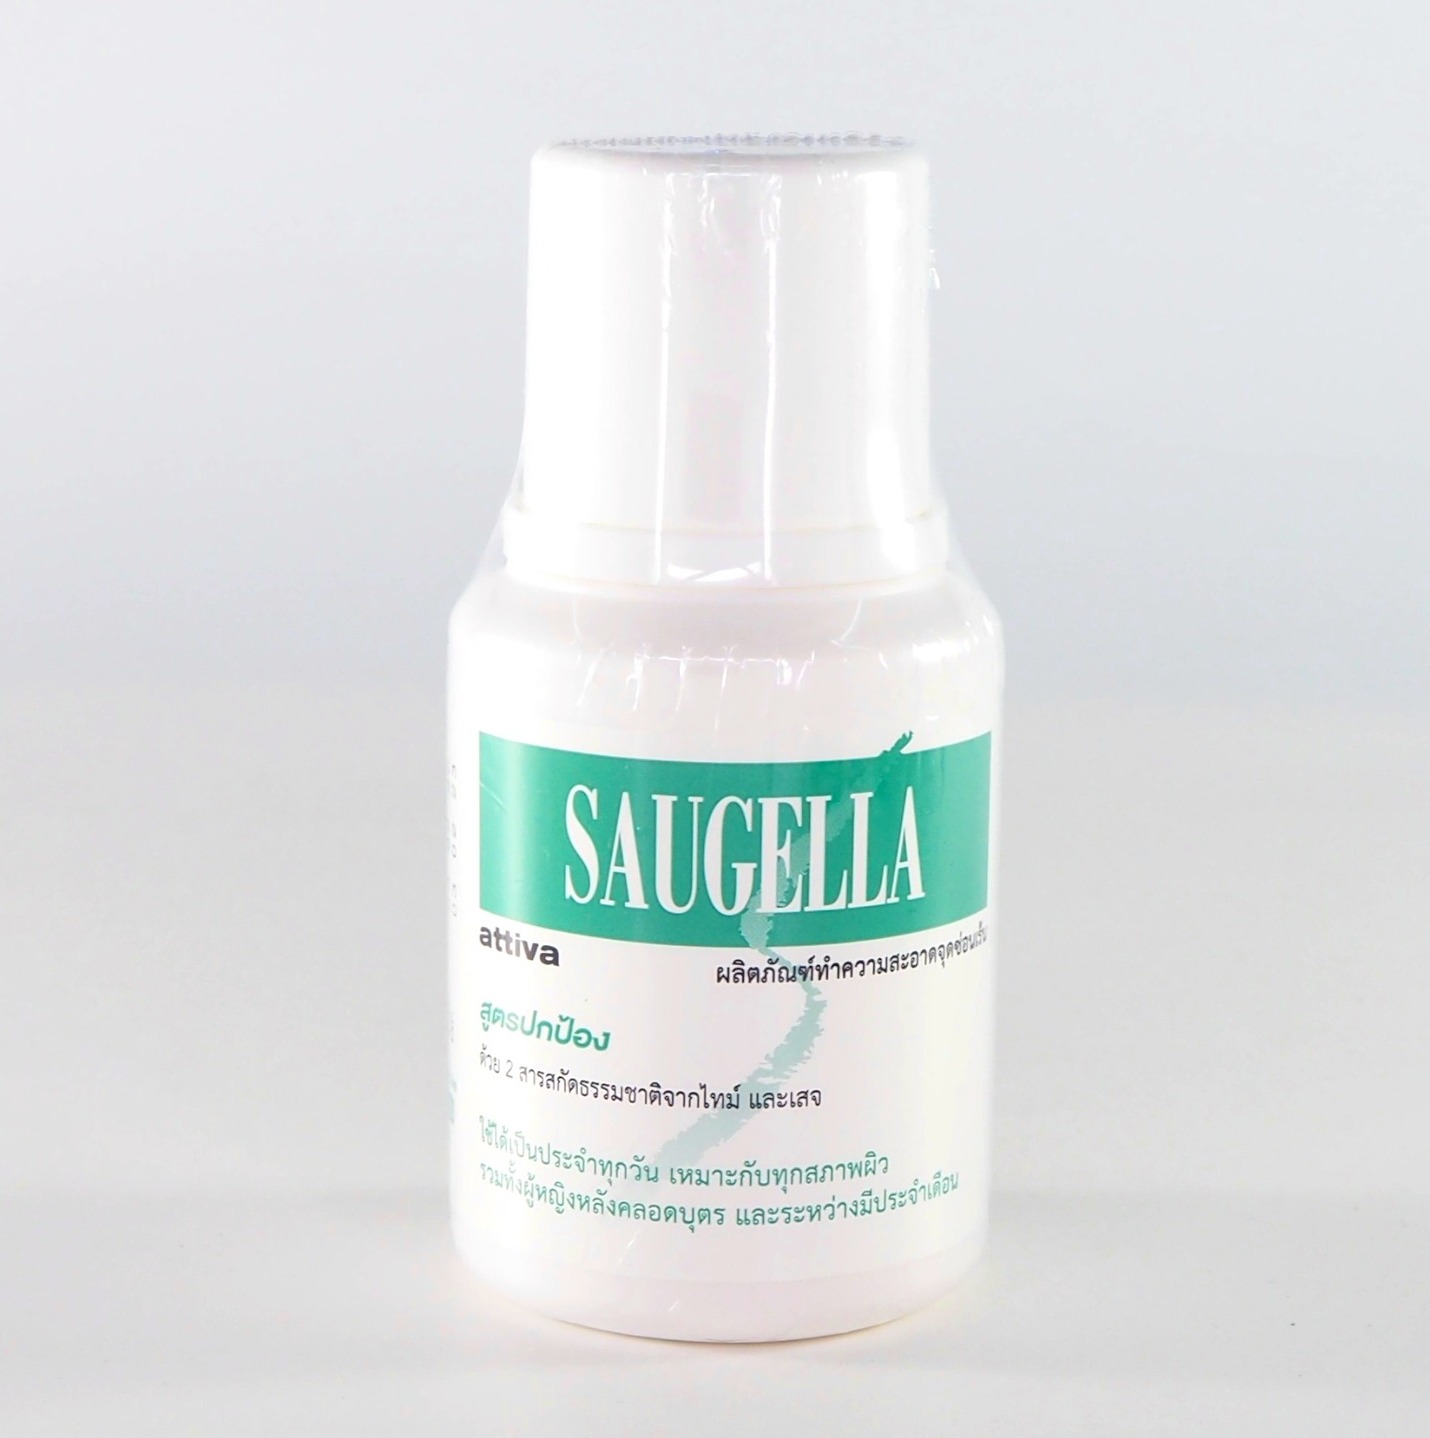 Saugella Attiva pH 3.5 ซอลเจลล่า แอ็ทติว่า ผลิตภัณฑ์ทำความสะอาดจุดซ่อนเเร้น สูตรปกป้องเป็น 2 เท่า 100 mL